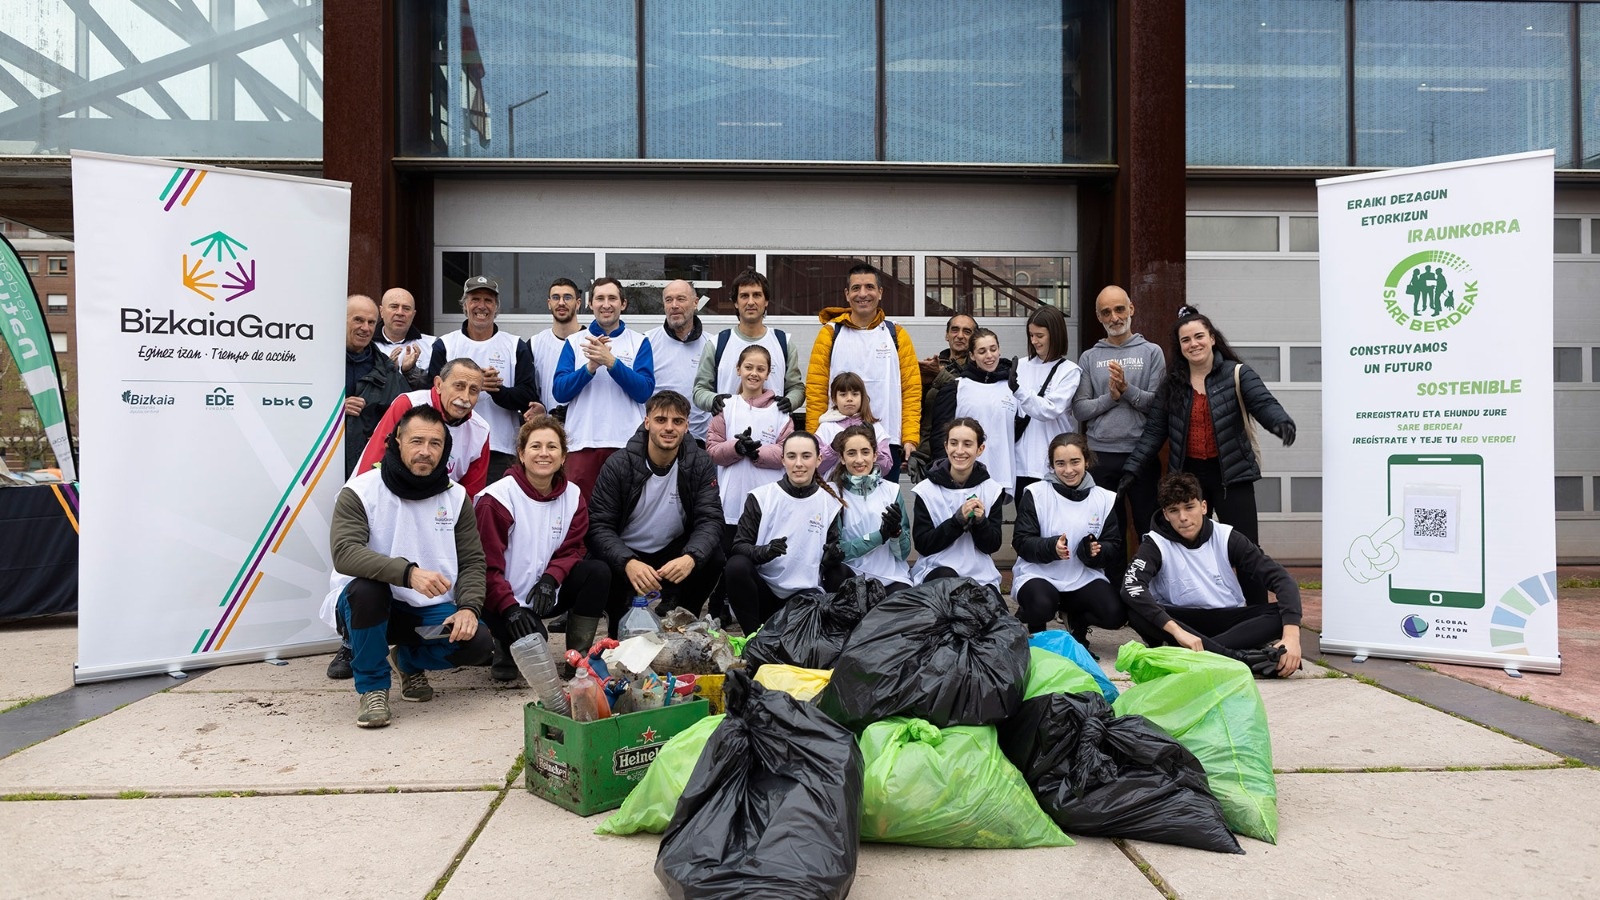 Activación Medioambiental: Experiencia limpieza del río Mañaria (Durango)